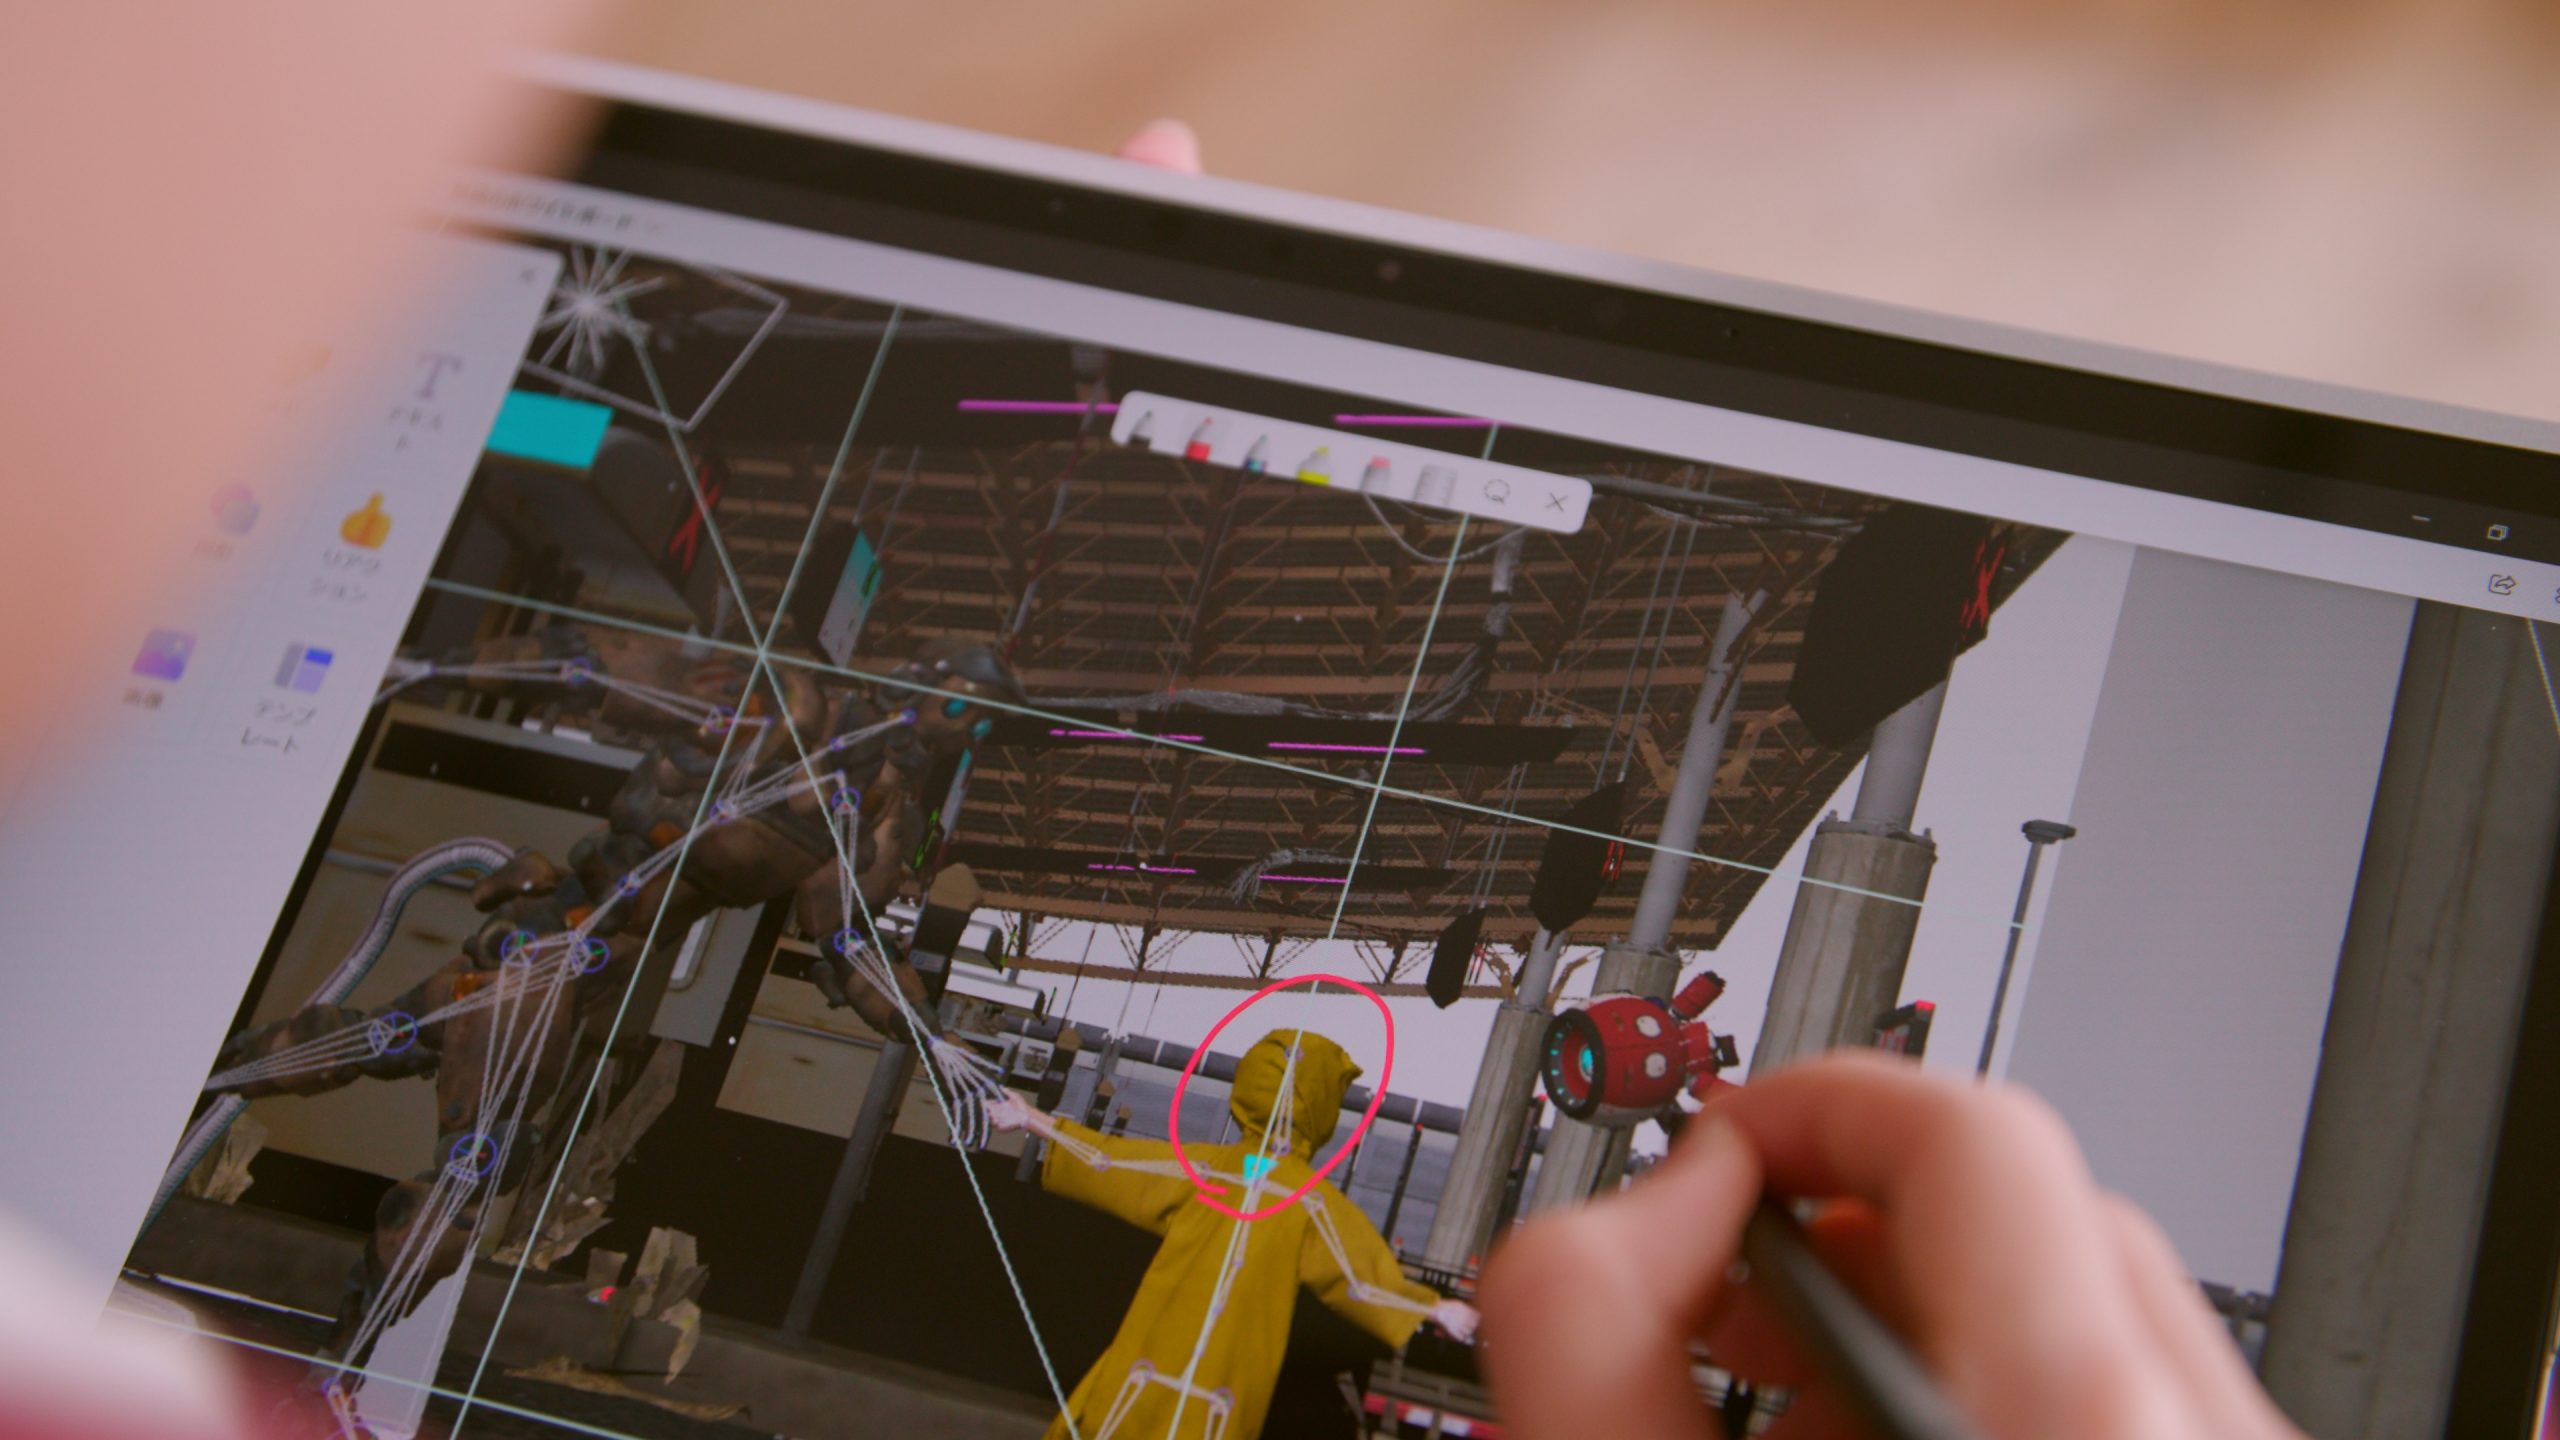 Surface Laptop Studio をスタジオモードにし、ペンを活用して修正箇所をホワイトボードに書き込みます